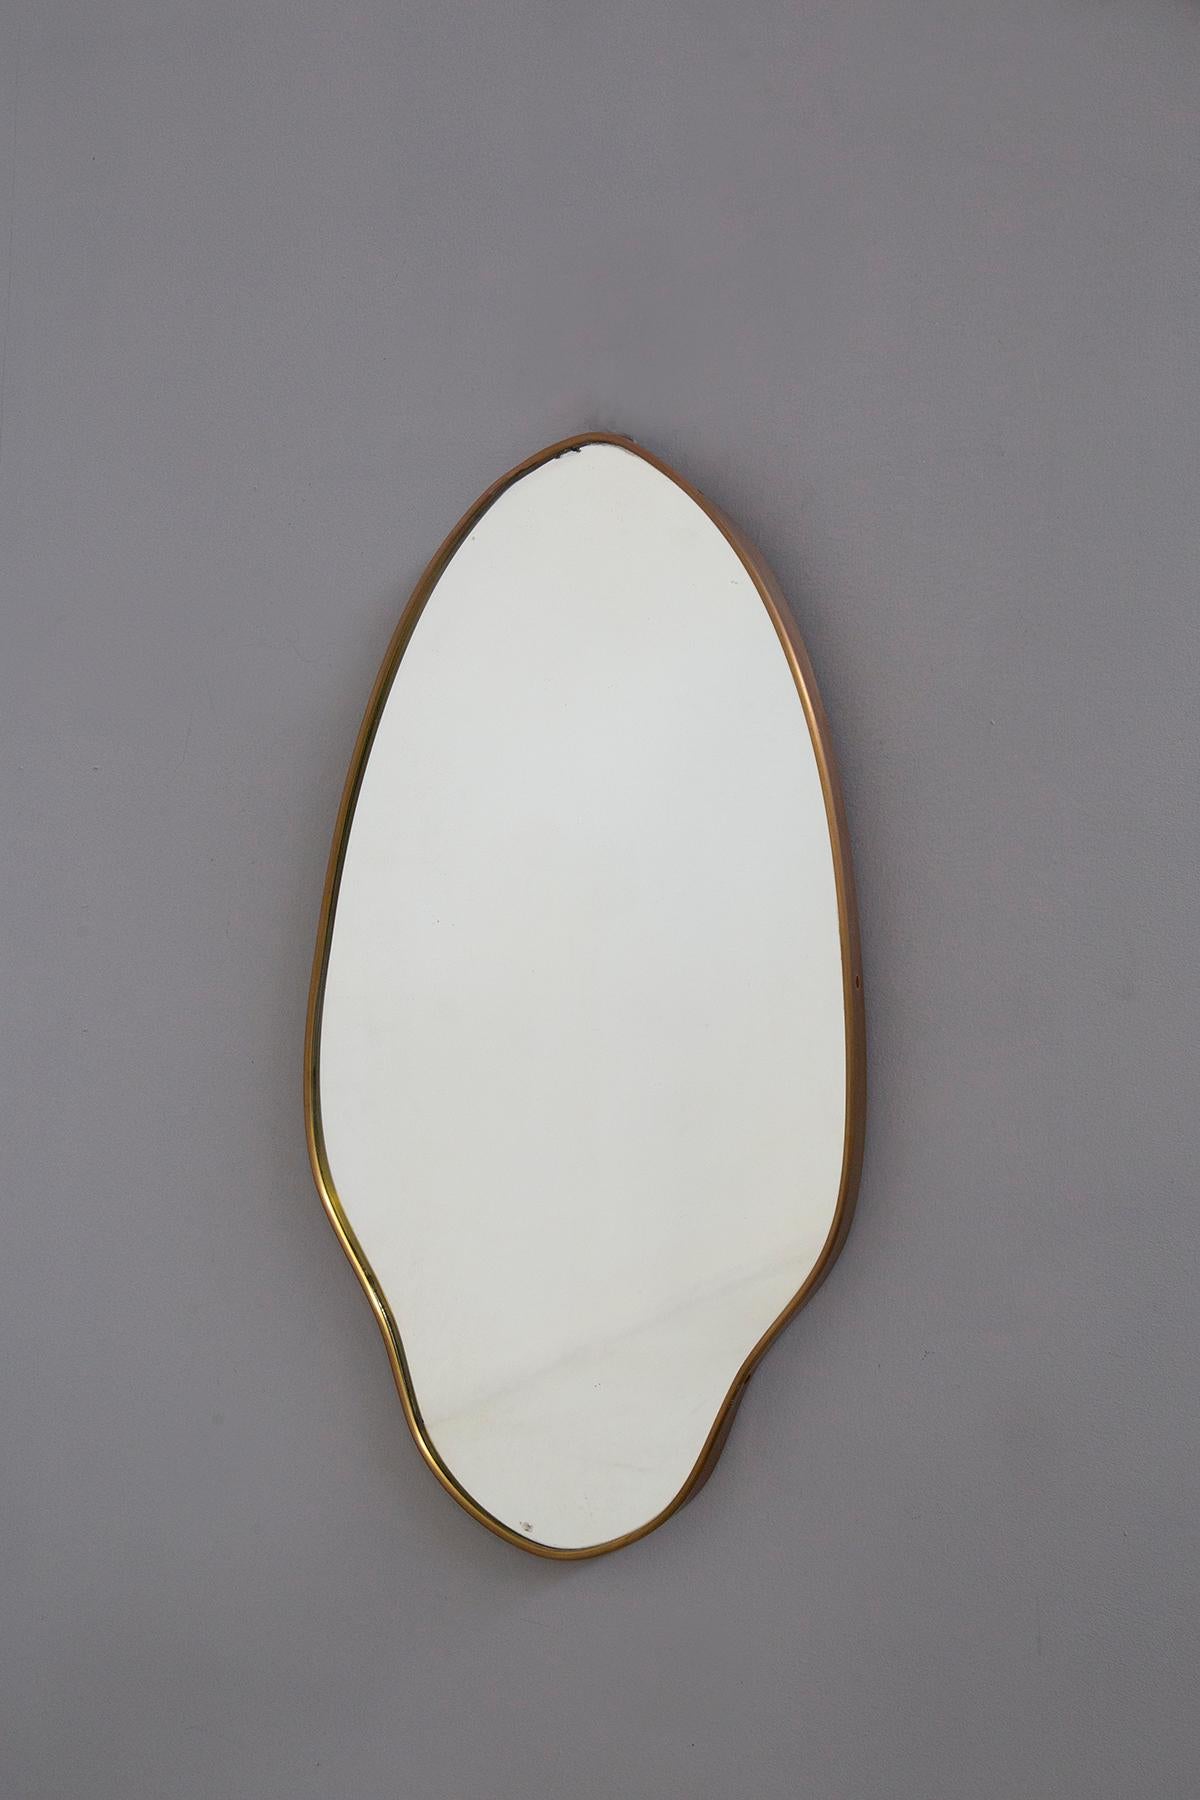 Transportez-vous dans les années 1950 glamour avec ce miroir italien vintage en laiton, une pièce étonnante qui incarne l'essence de l'élégance intemporelle. Ce miroir n'est pas seulement un reflet, c'est une déclaration de style et de